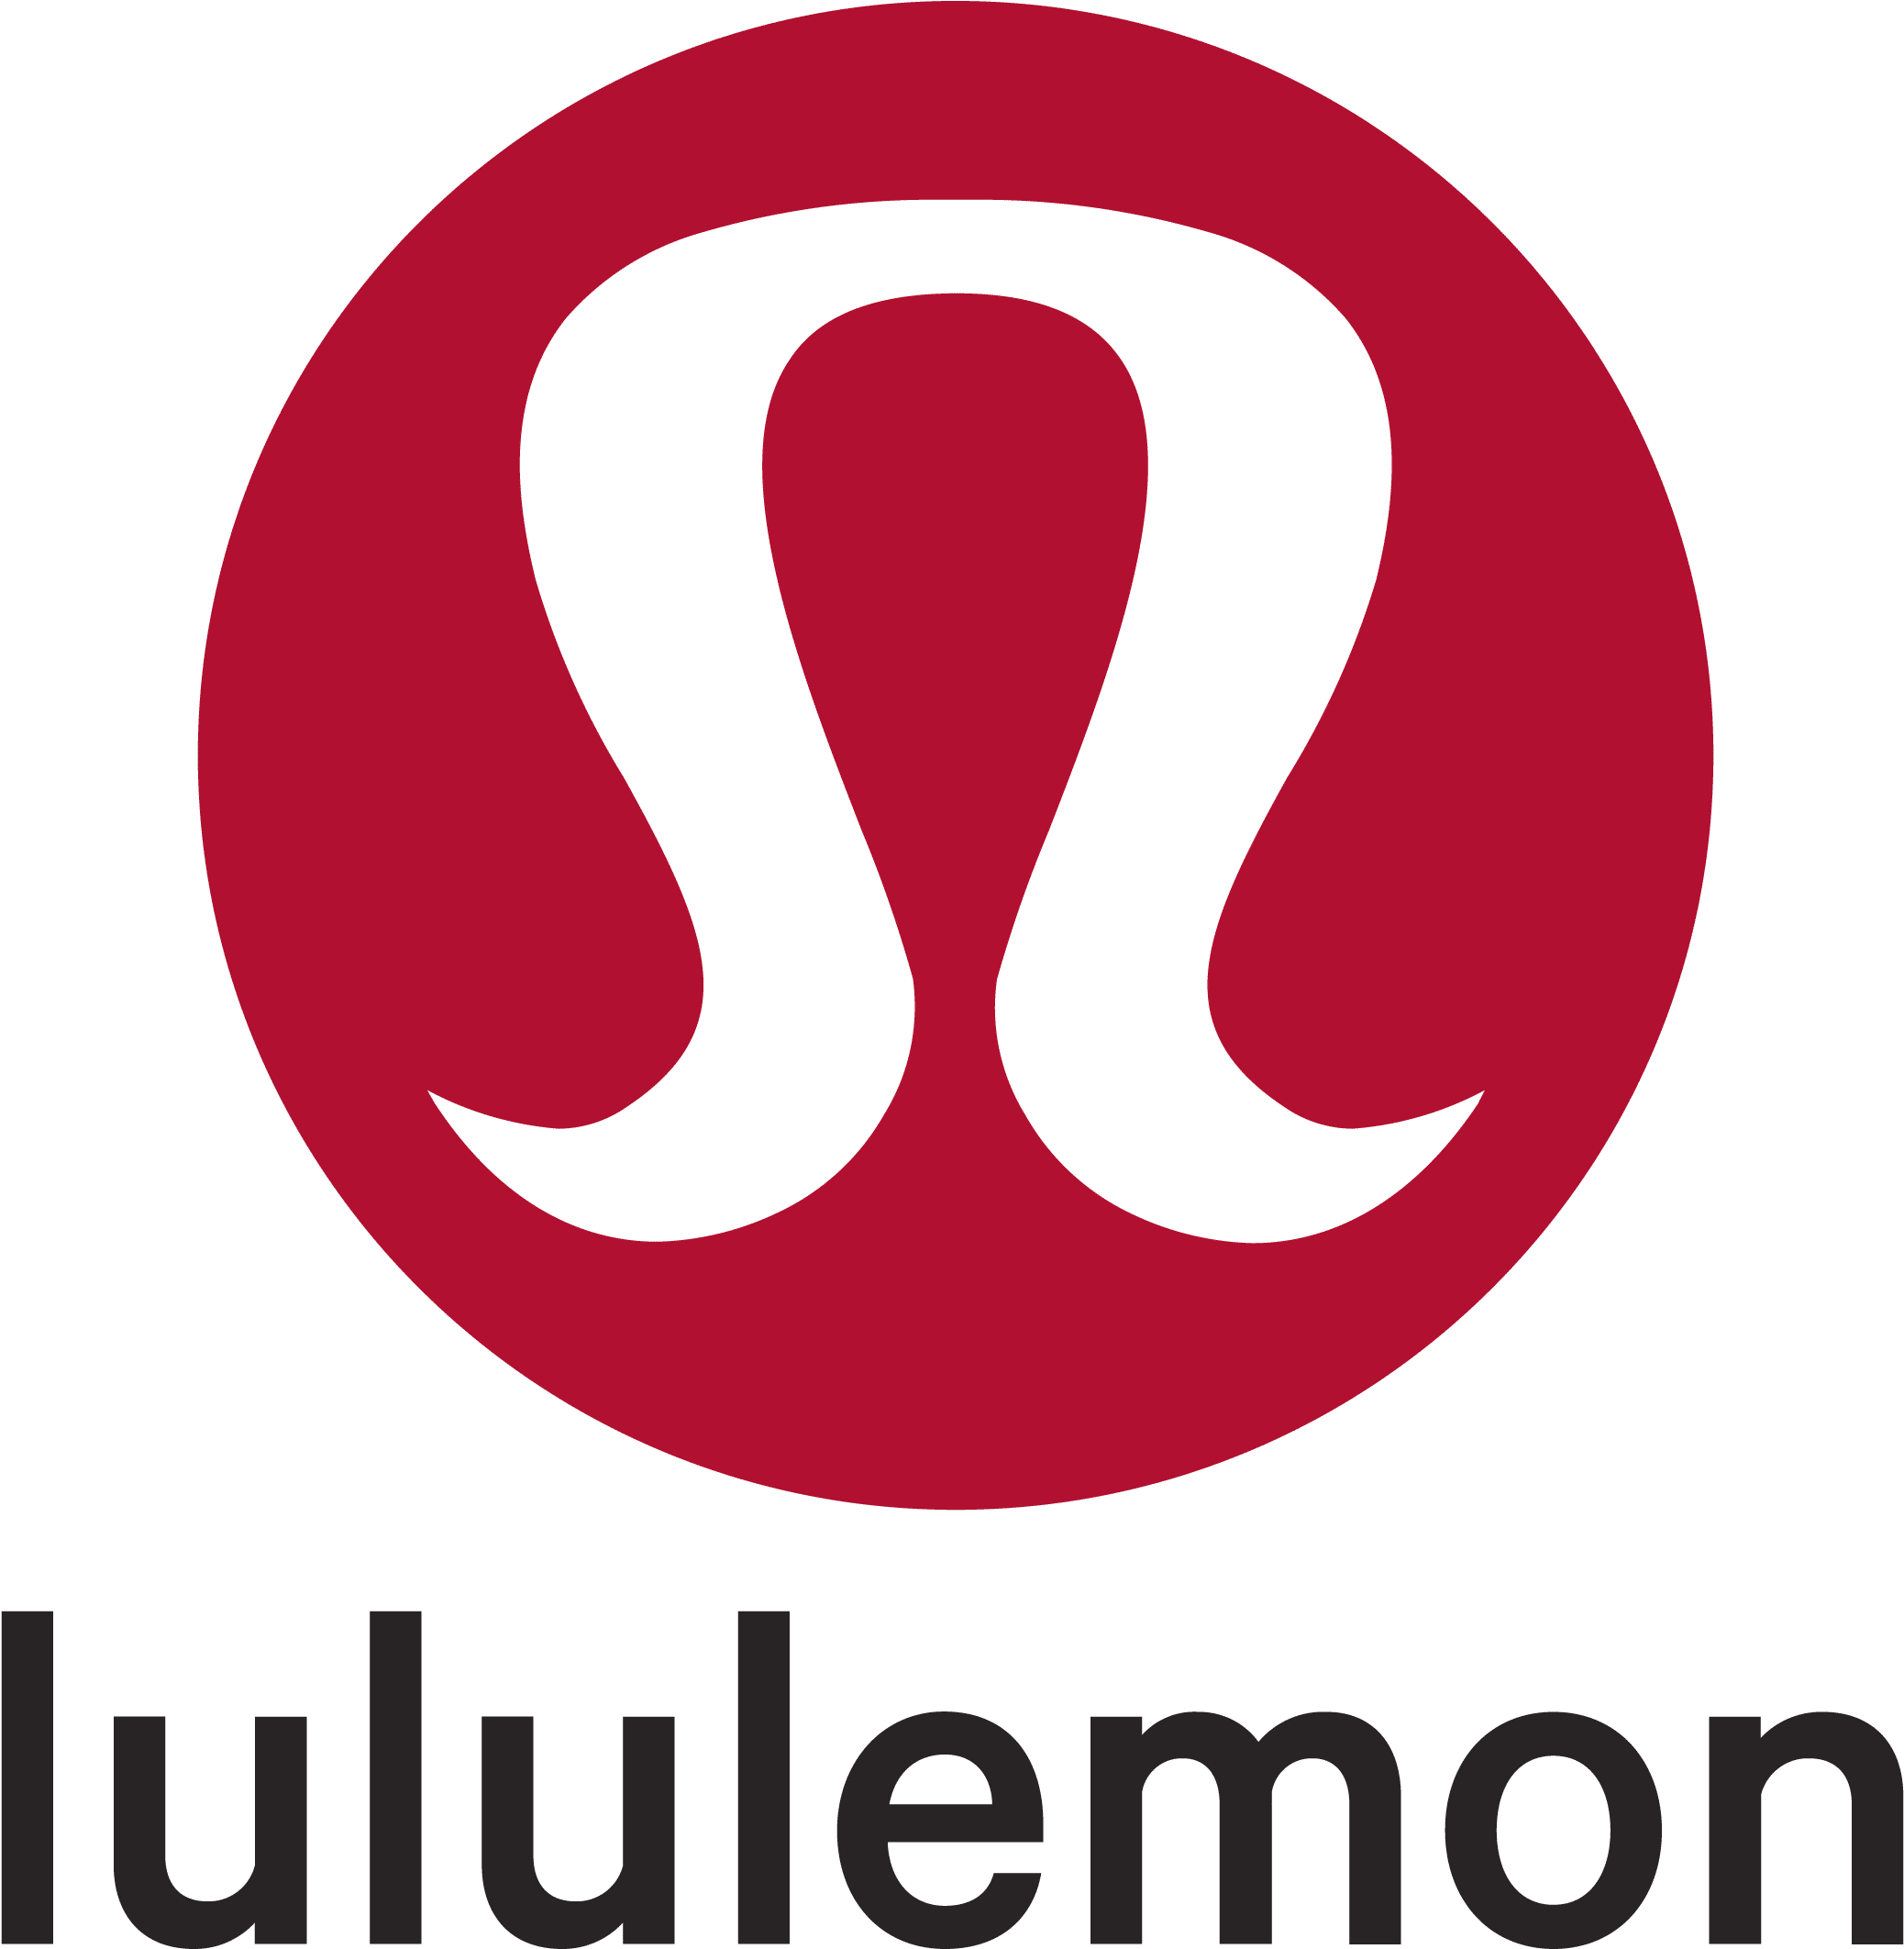 512 5127106 Lululemon Emblema Lululemon Logo Black Background 